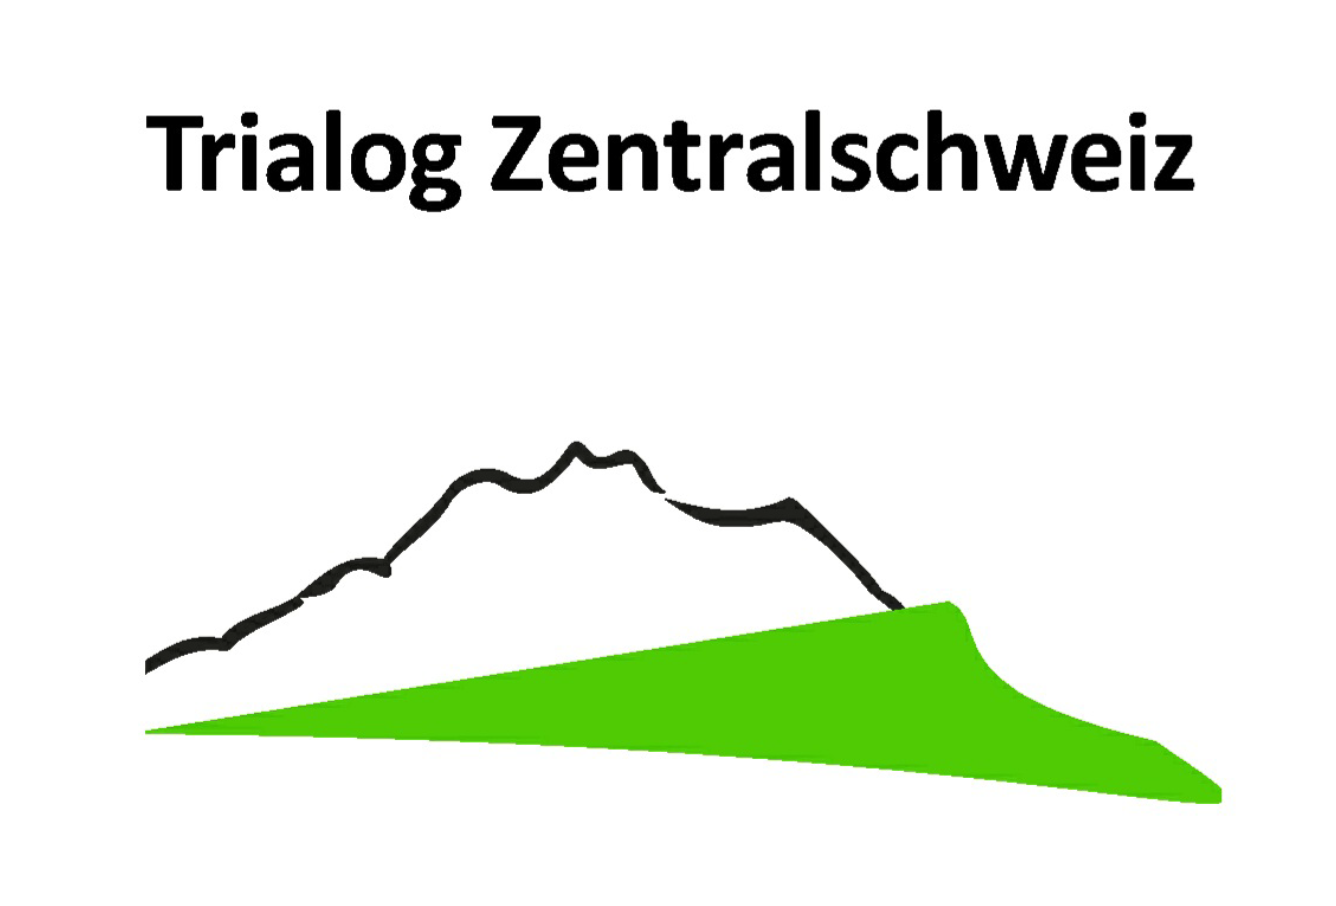 Eine SIlhouette eines BErges in der Bildmitte. Darünter in grün eine Anlehnung an Wald/Wiese. Am oberen Bildrand der Titel "Trialog Zentralschweiz".